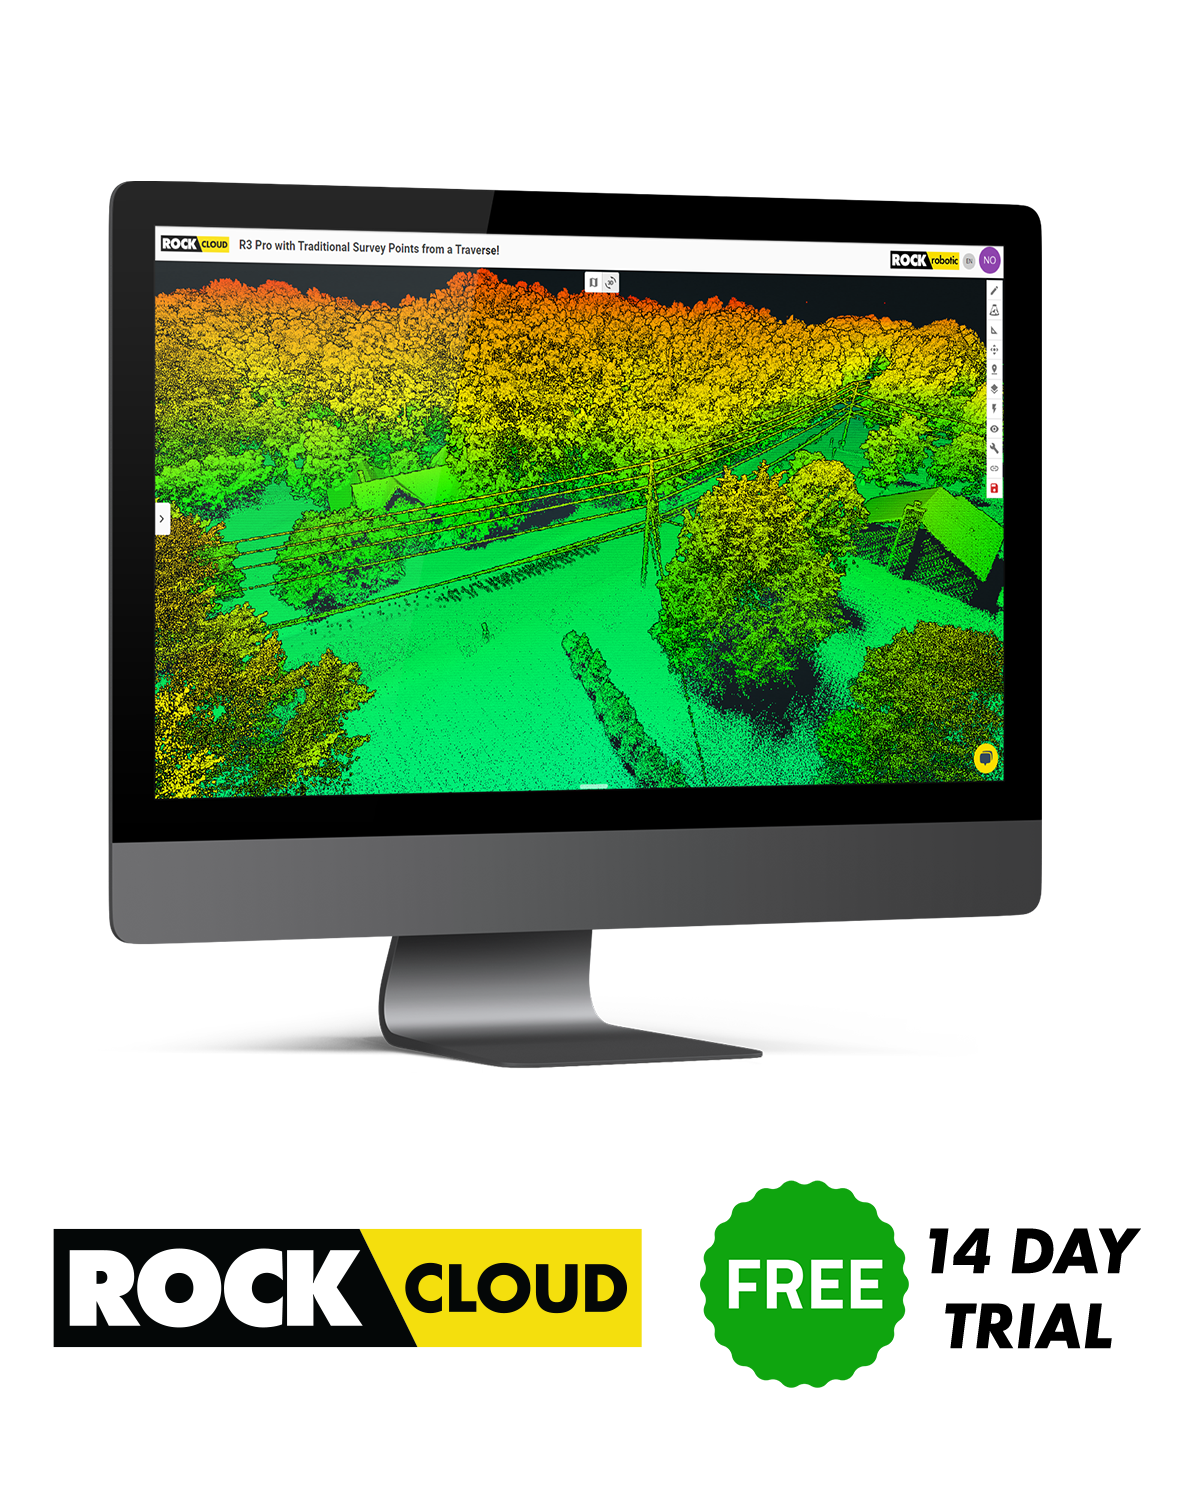 ROCK Cloud Free Trial